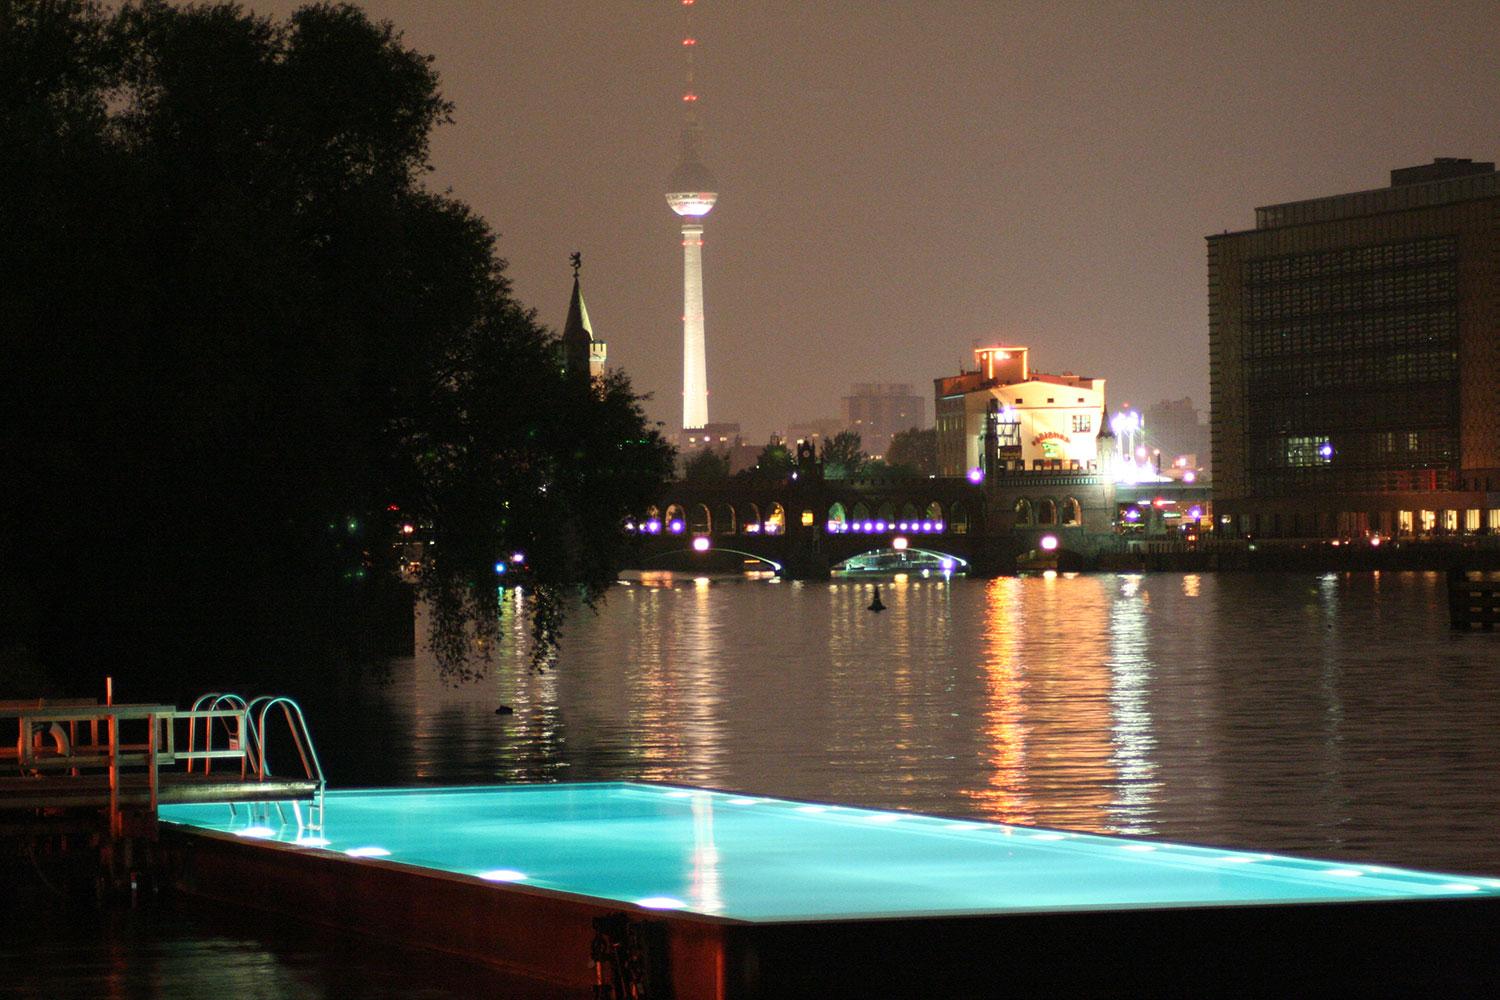 BADESCHIFF, BERLIN, TYSKLAND Flytande pool, gjord av skrovet på ett gammalt fartyg. Härlig utsikt mot det 368 meter höga tv-tornet på Alexanderplatz. Invid poolen finns en bar. Mer info: www.arena-berlin.de/badeschiff/